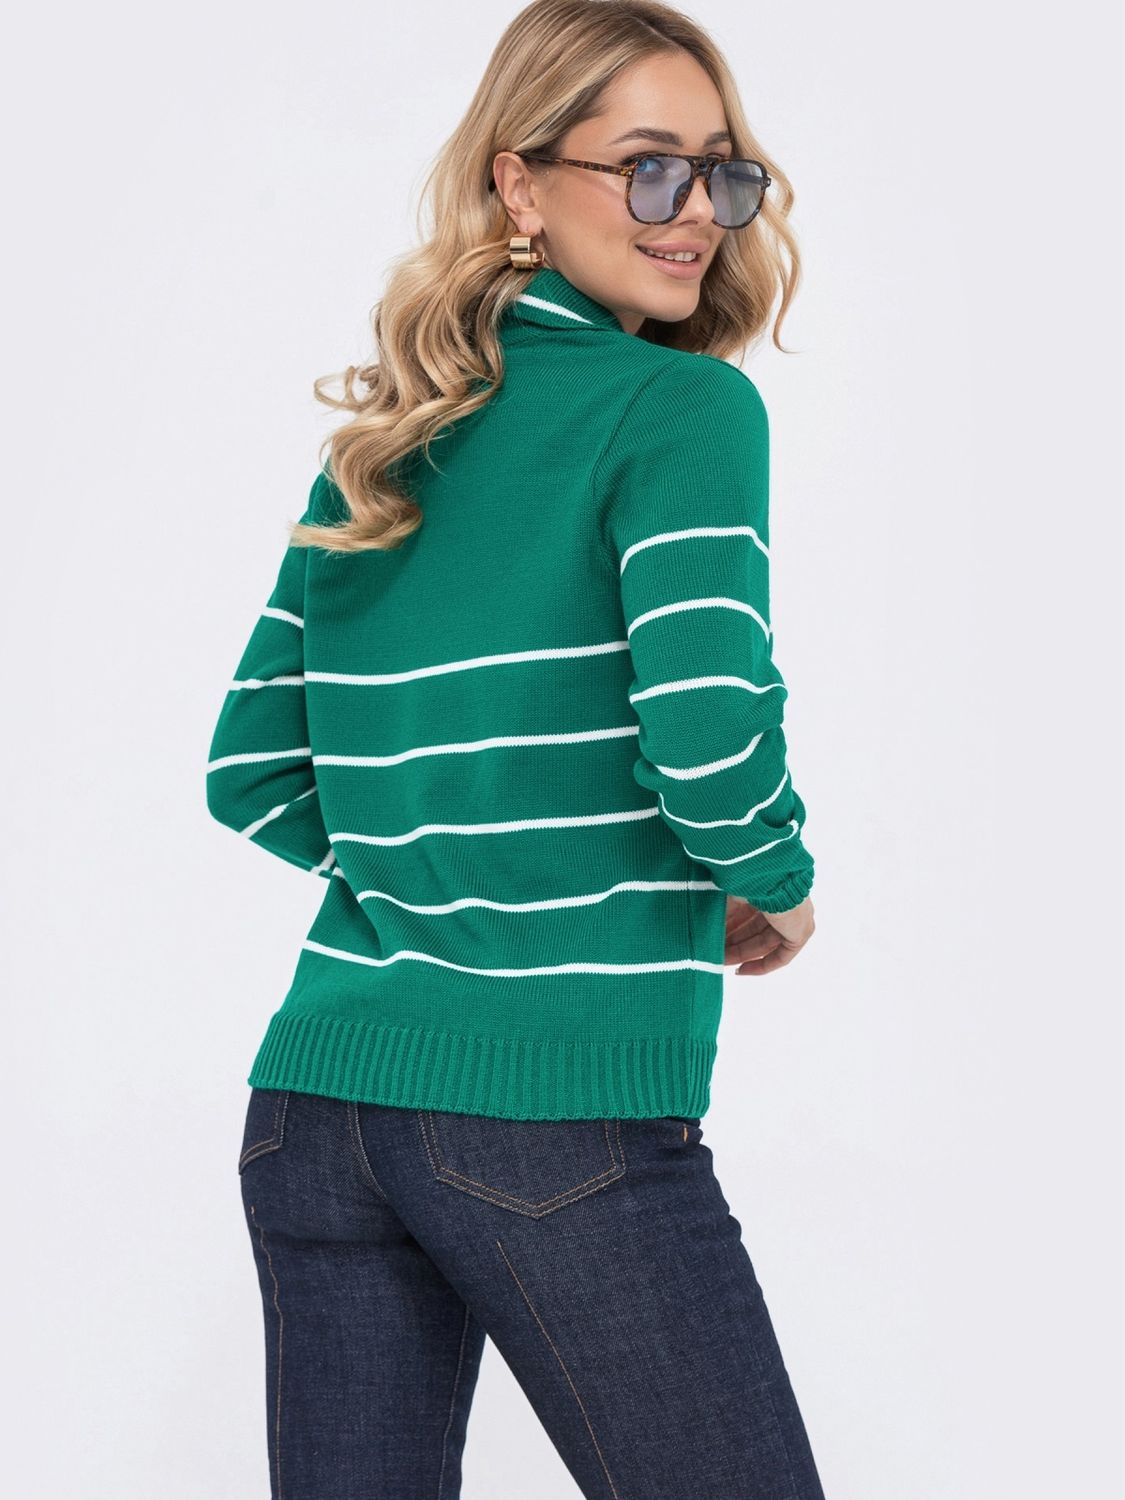 Женский вязаный пуловер зеленого цвета - фото